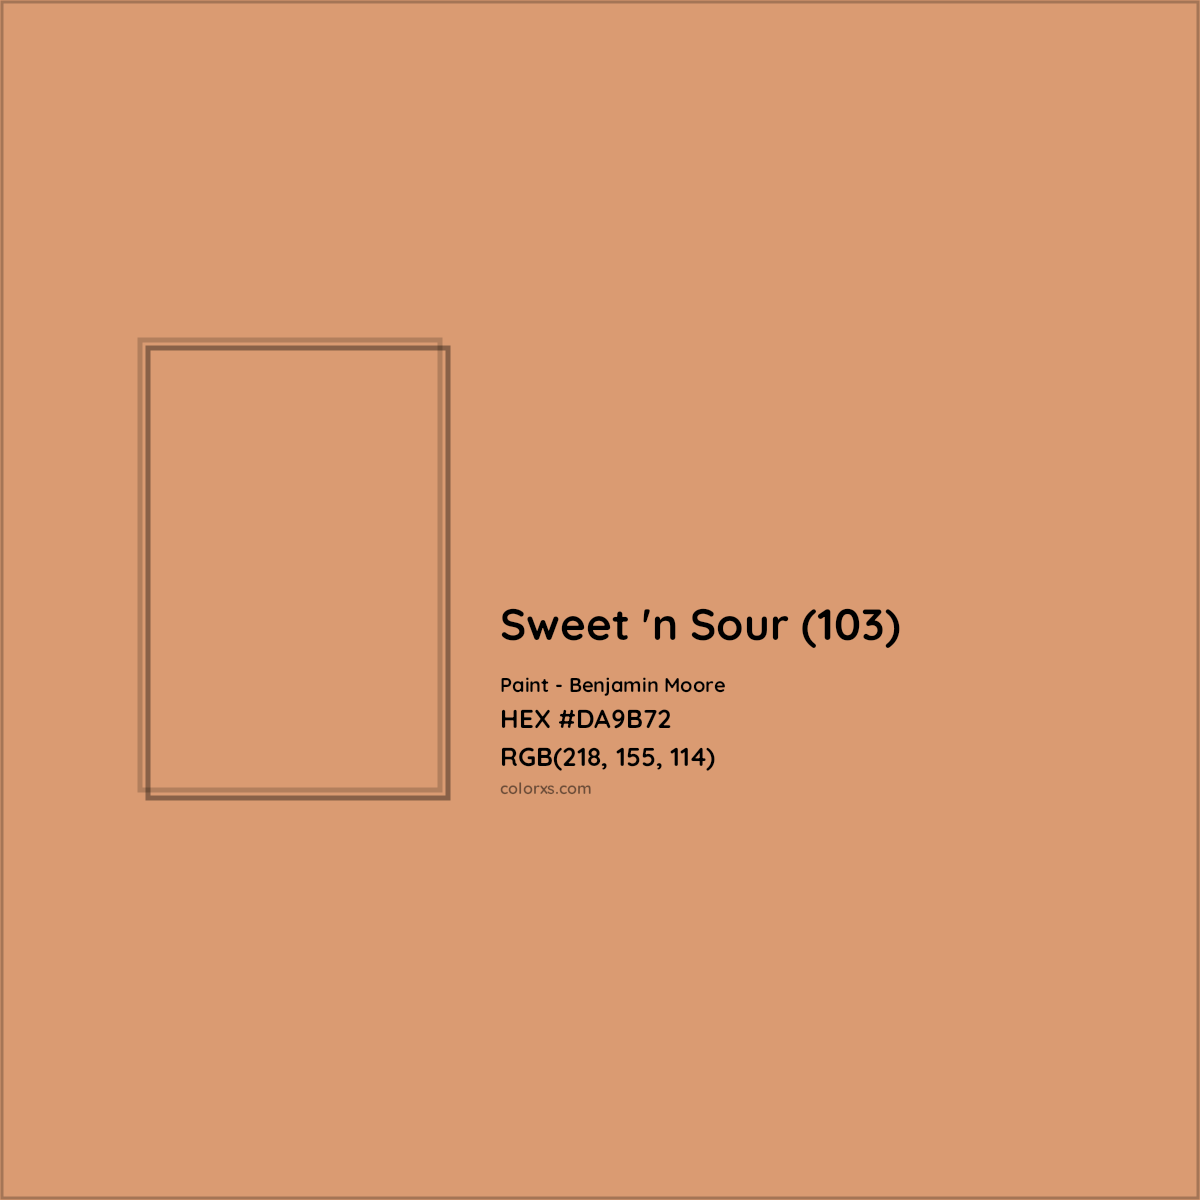 HEX #DA9B72 Sweet 'n Sour (103) Paint Benjamin Moore - Color Code